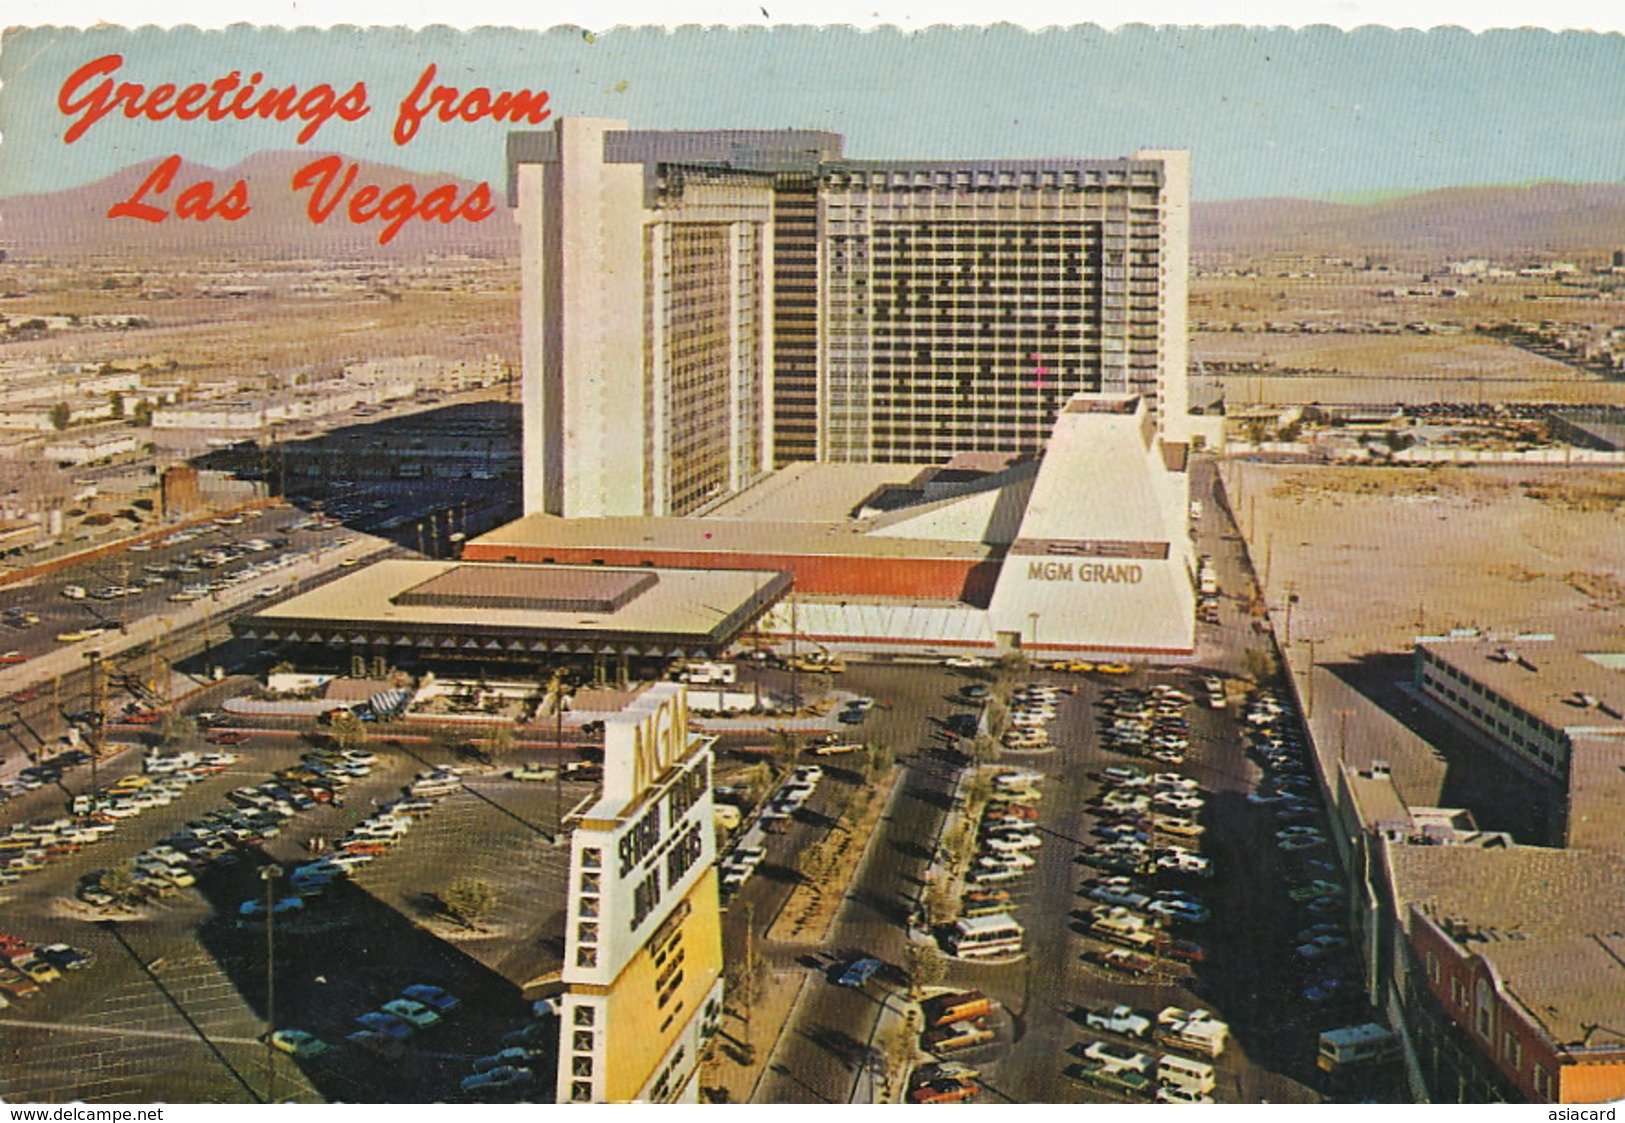 Las Vegas  MGM Grand  1976 - Las Vegas